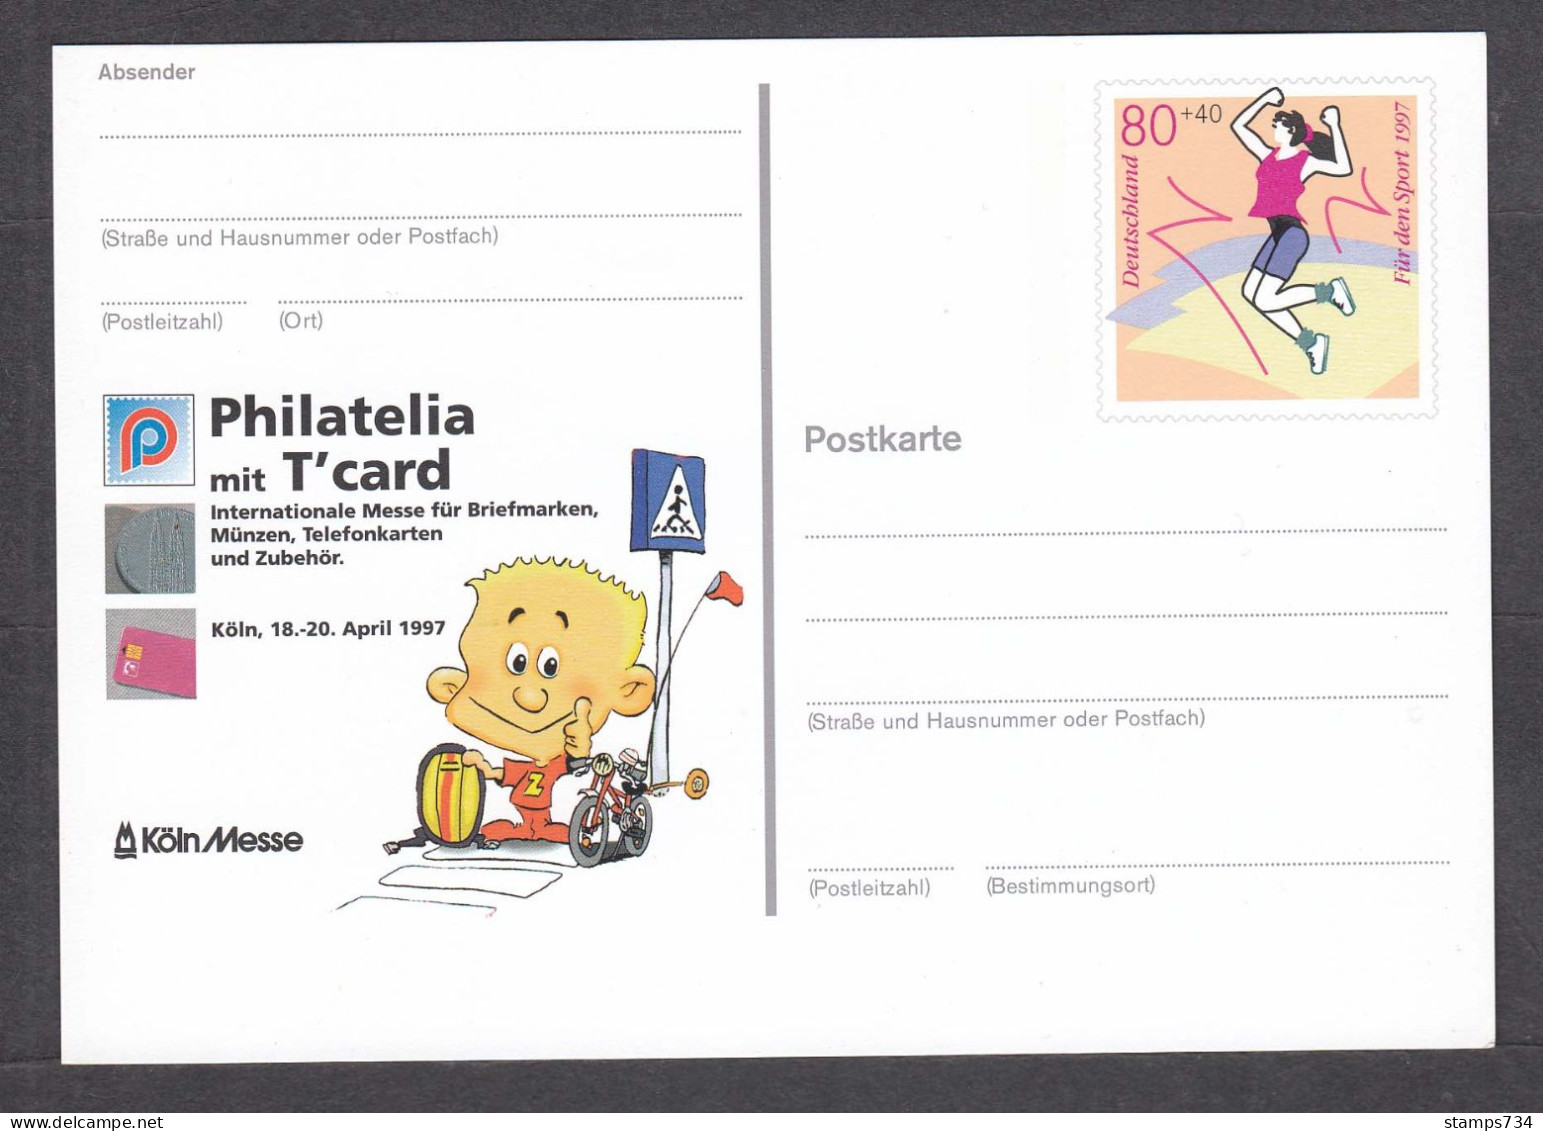 BRD 07/1997 - 80+40 Pf.(Jumping), Philatelia T'card, Post. Stationery, Mint - Jumping